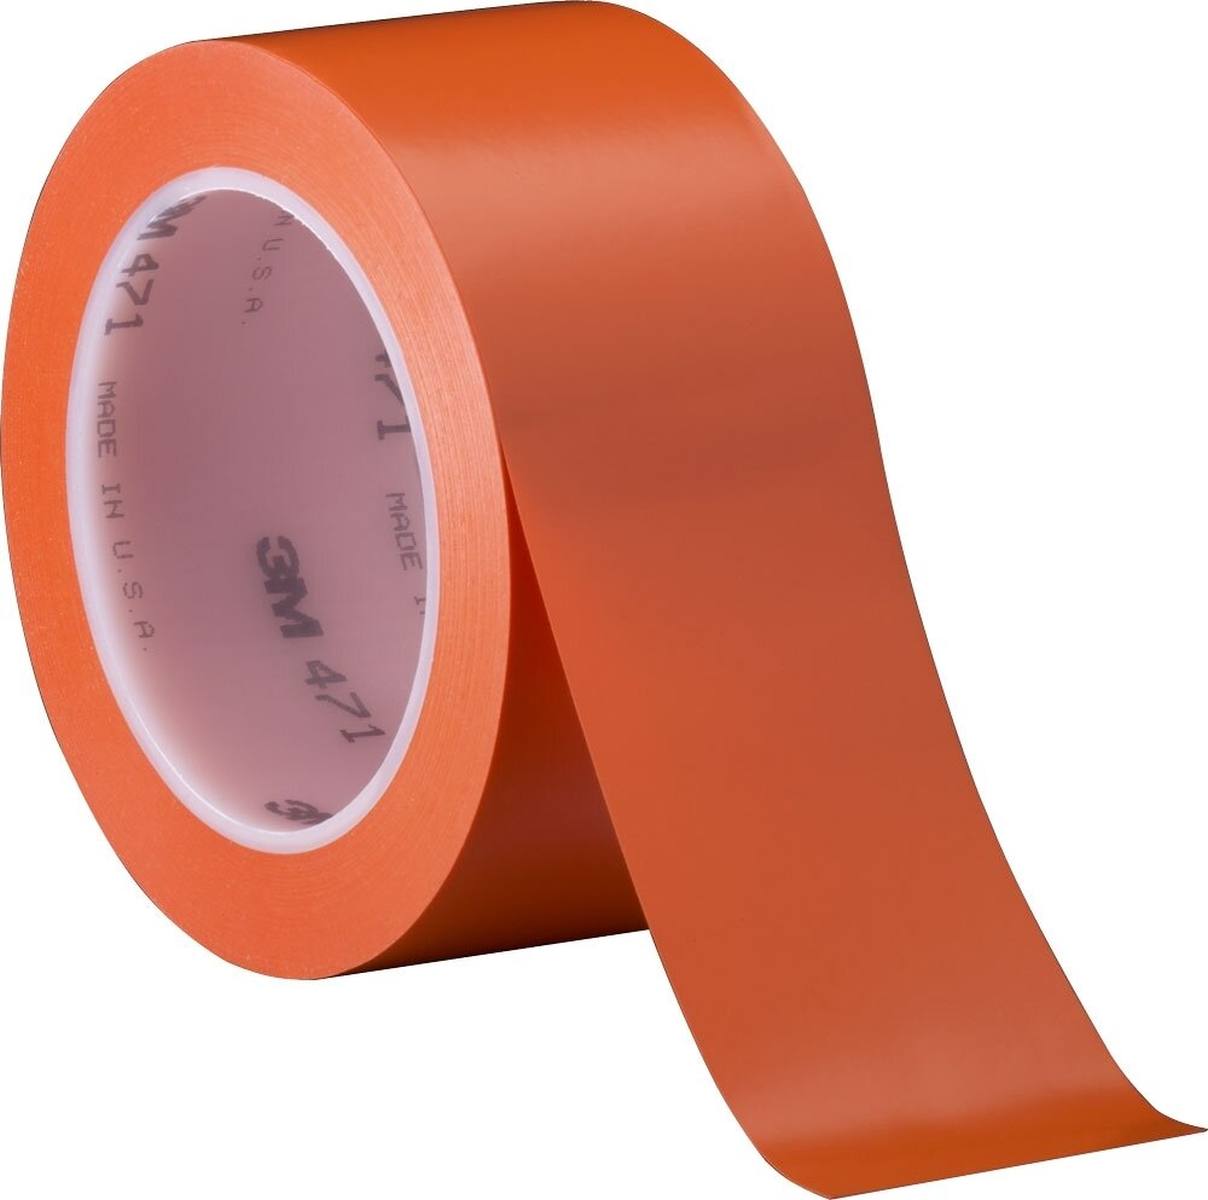 Nastro adesivo 3M in PVC morbido 471 F, arancione, 50 mm x 33 m, 0,13 mm